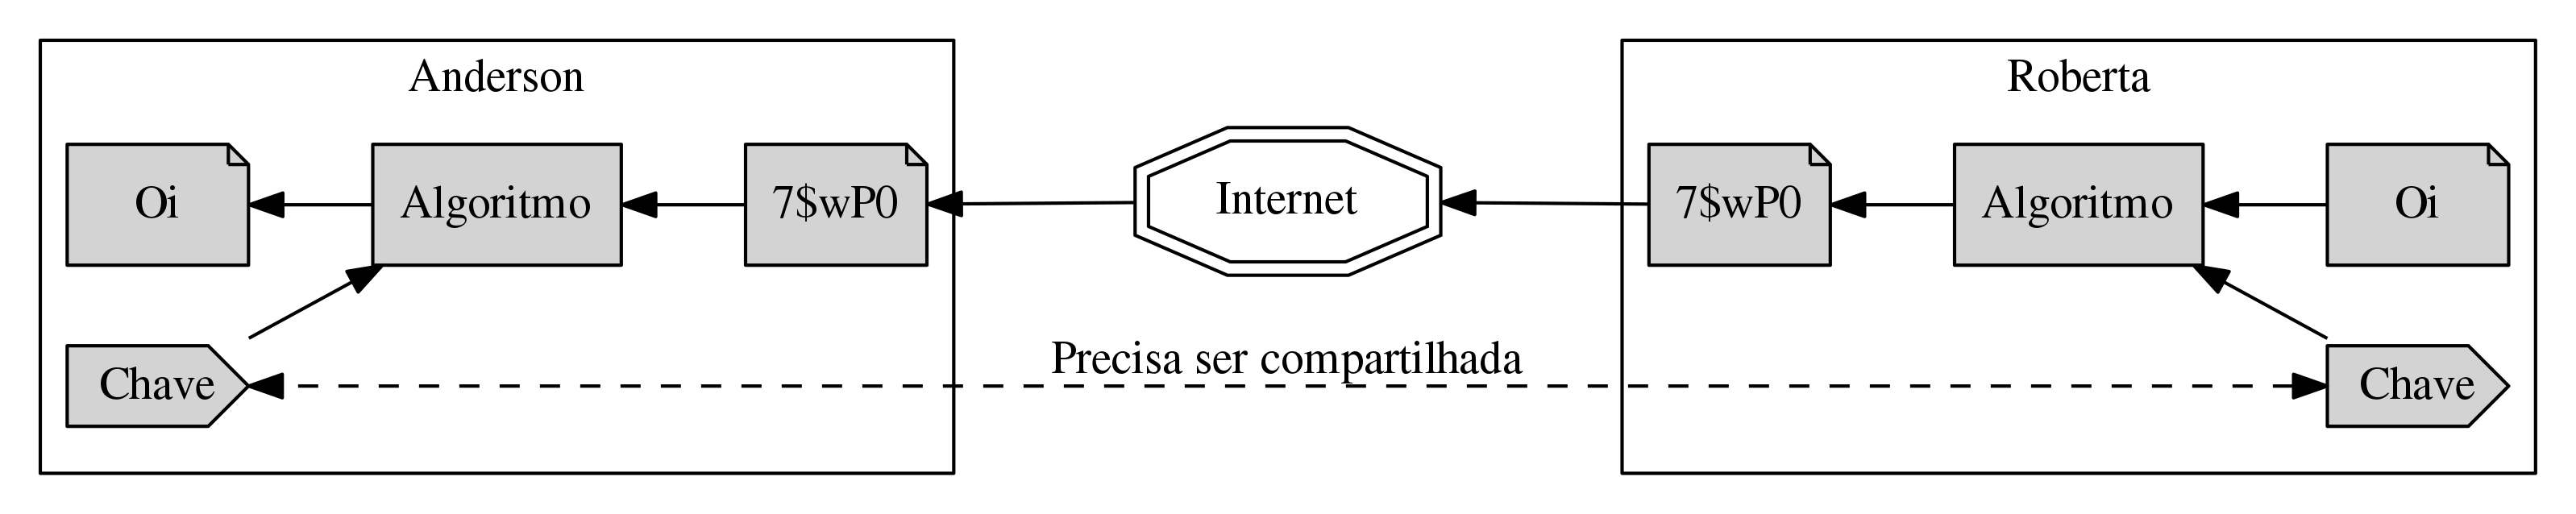 Diagrama conceitual